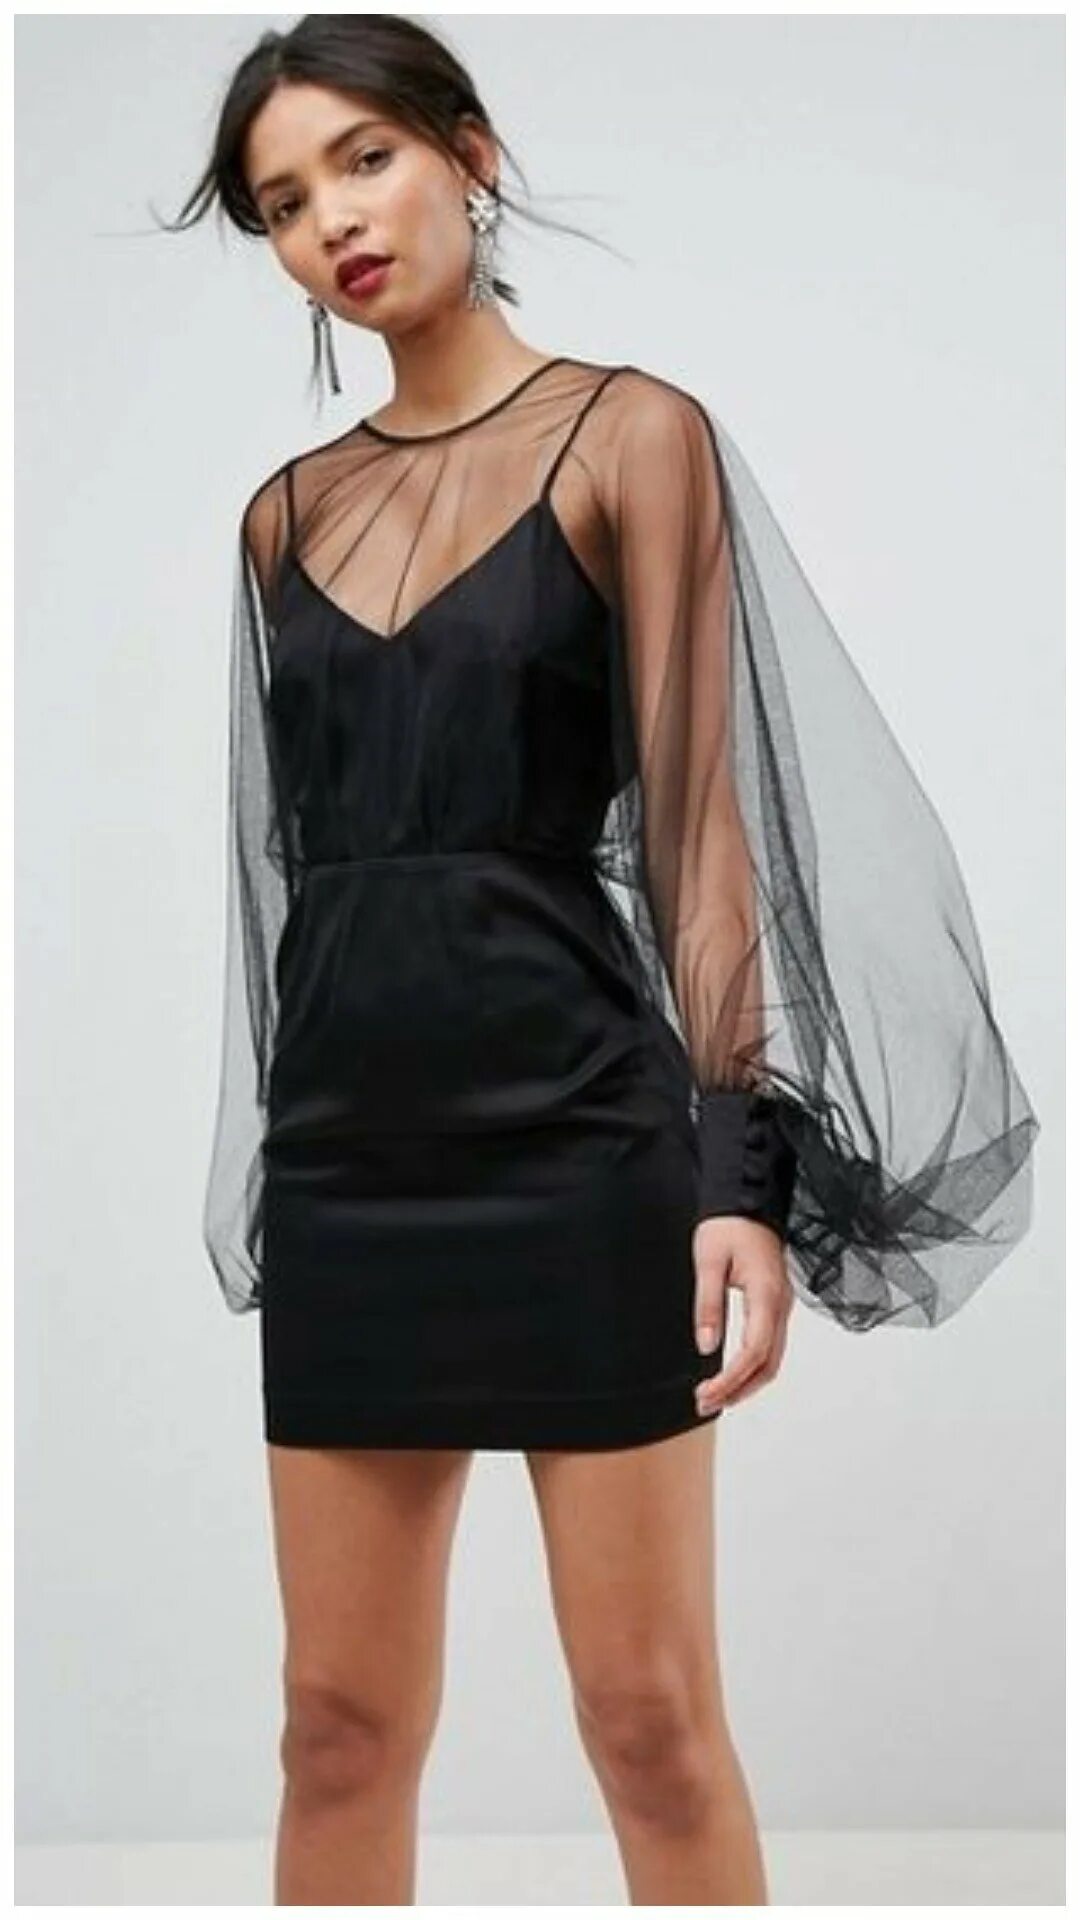 Платье рукава накидка. Прозрачное платье сетка. Платье с прозрачными рукавами. Прозрачное черное платье. Полупрозрачная накидка на платье.